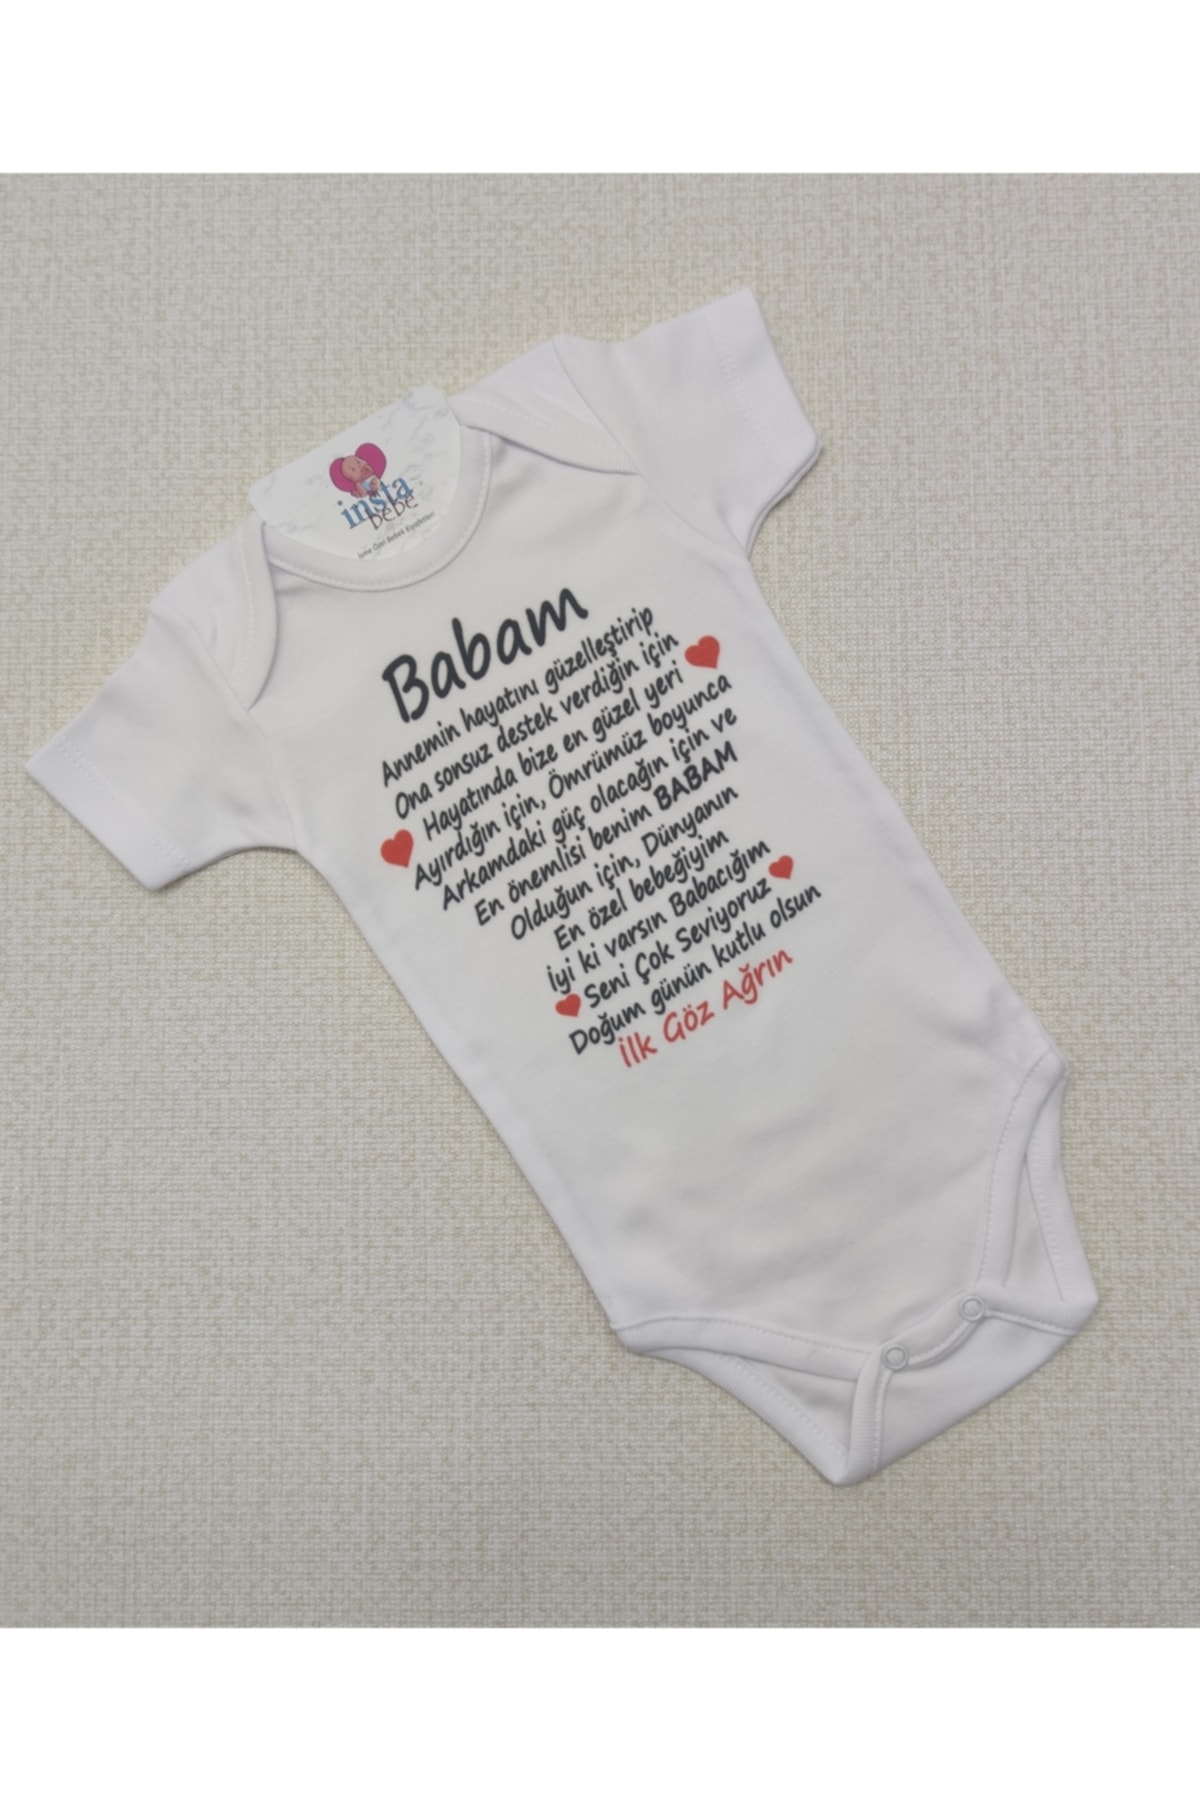 İnsta Bebe Baba Doğum Günün Kutlu Olsun Yazılı Zıbın Çıtçıtlı Body